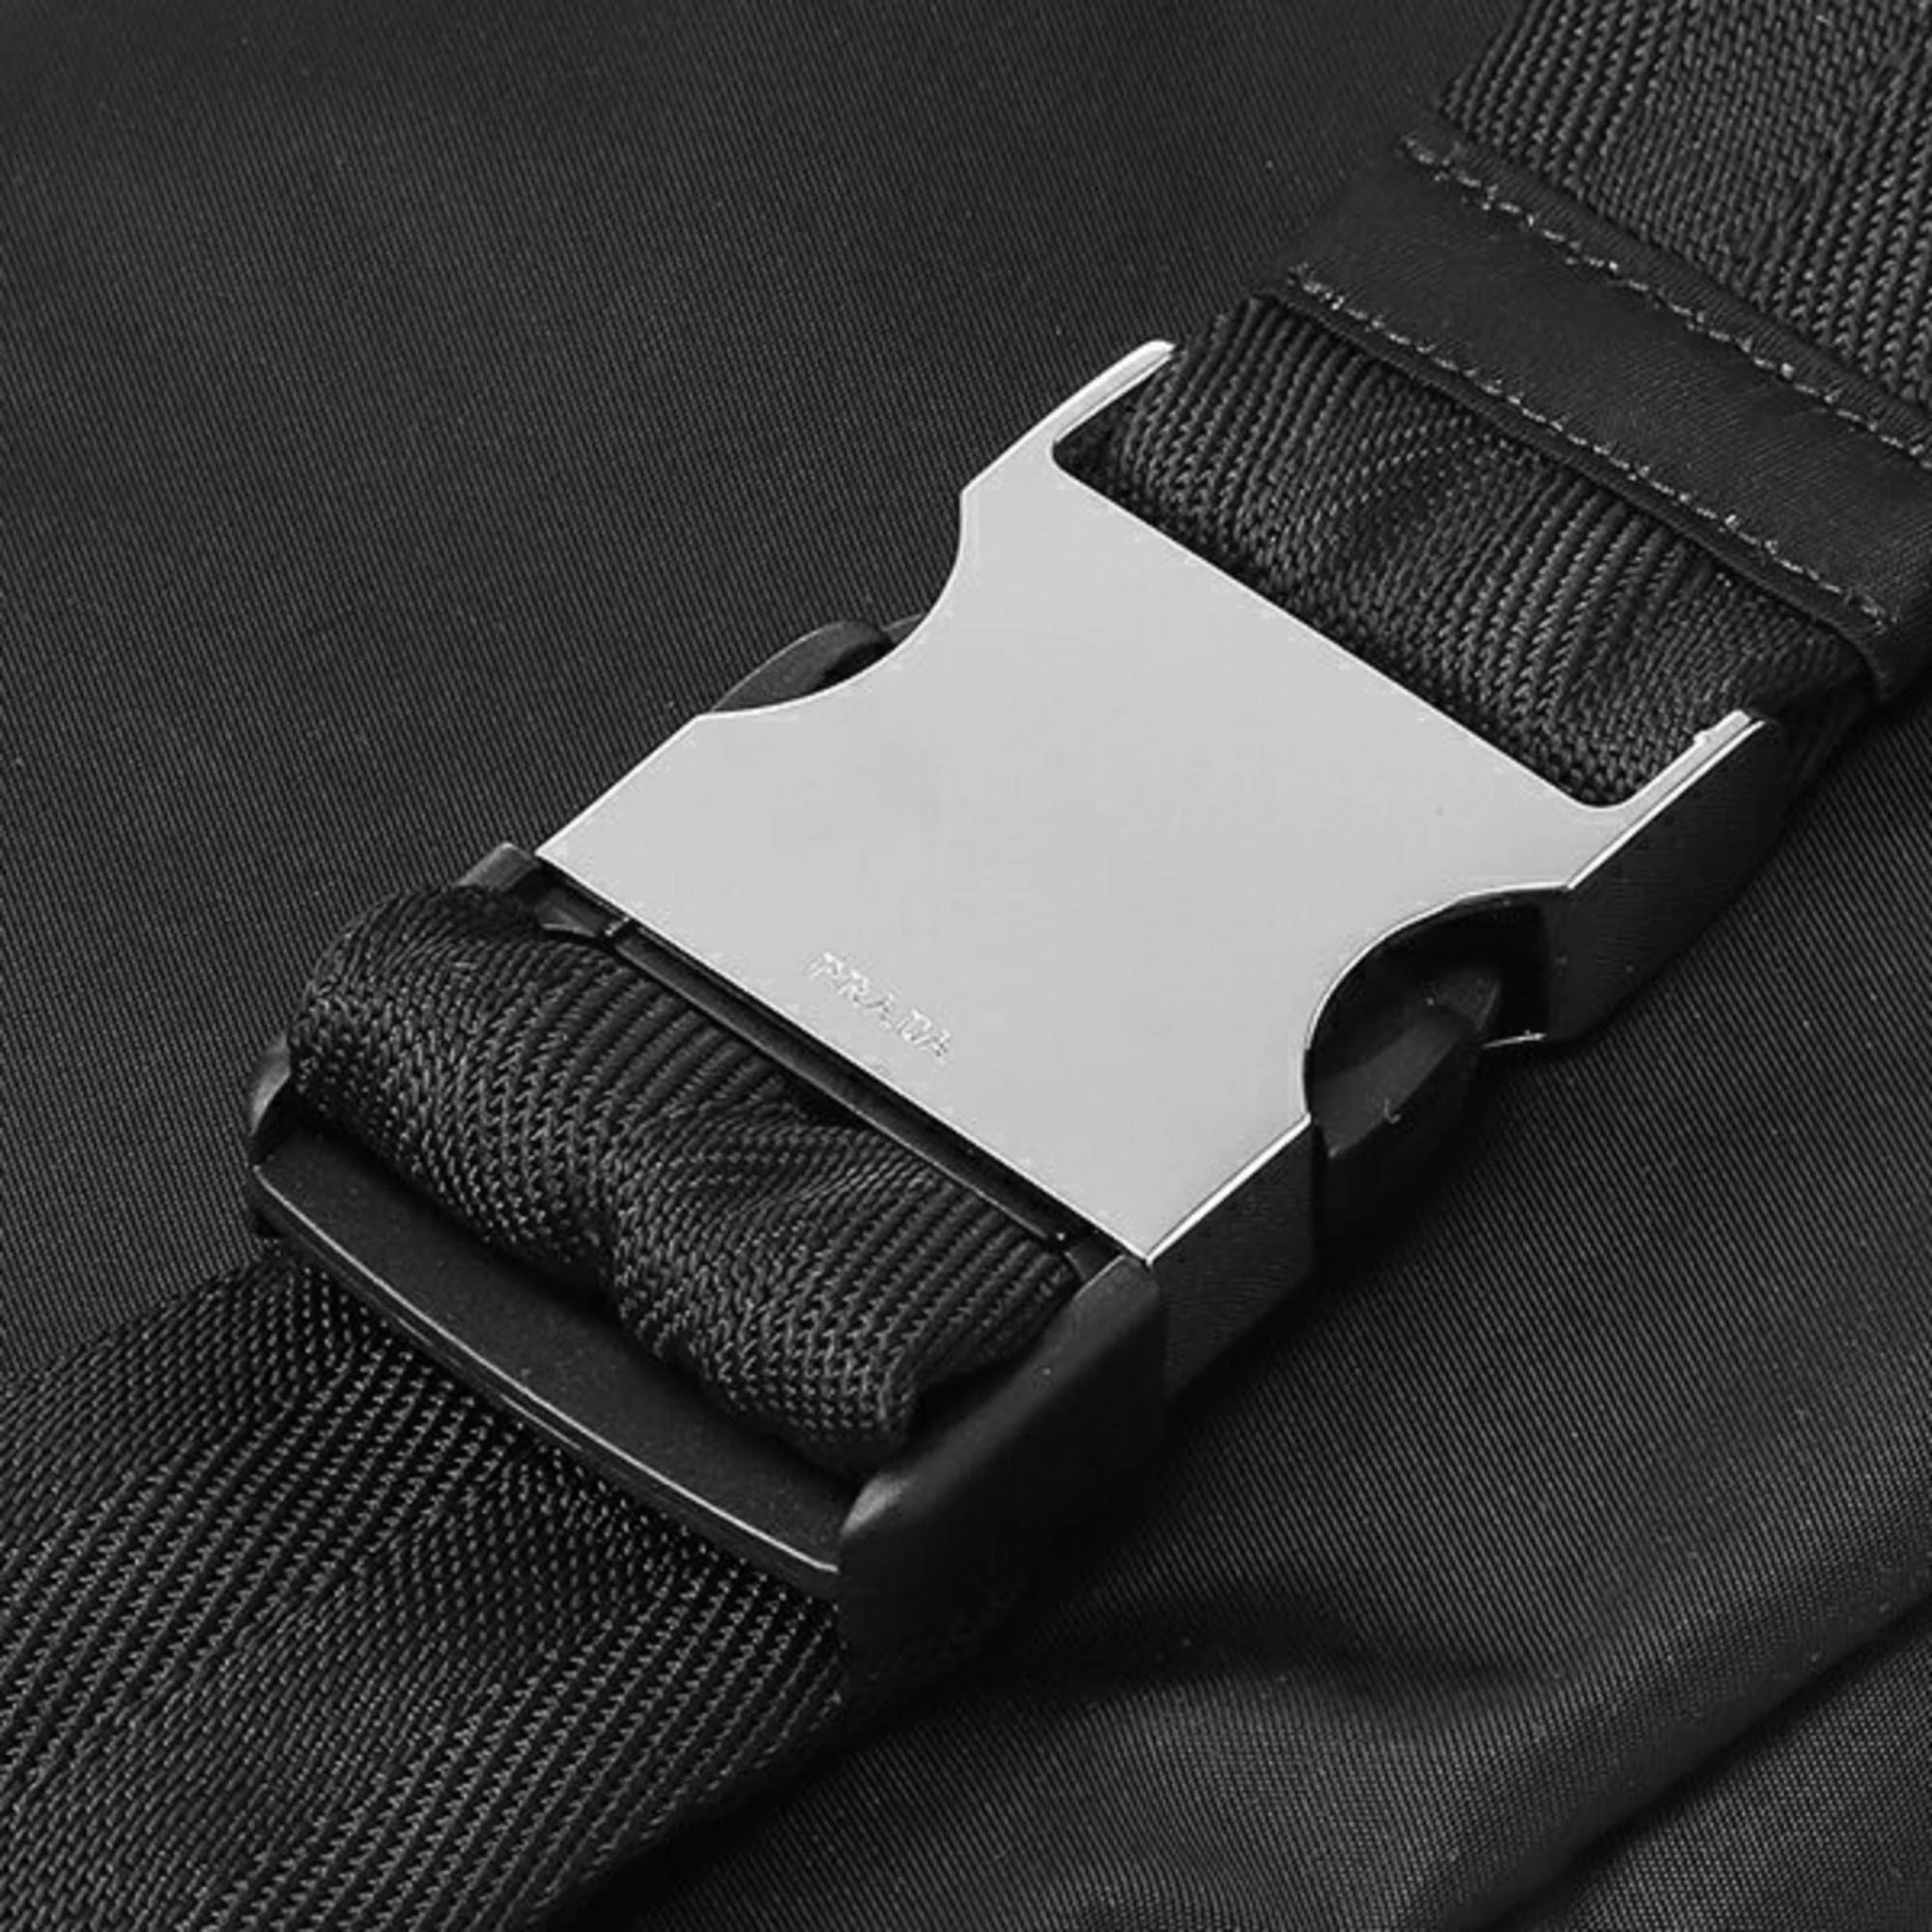 Belt bags Prada - Nylon belt bag with logo detail - 2VL132973002